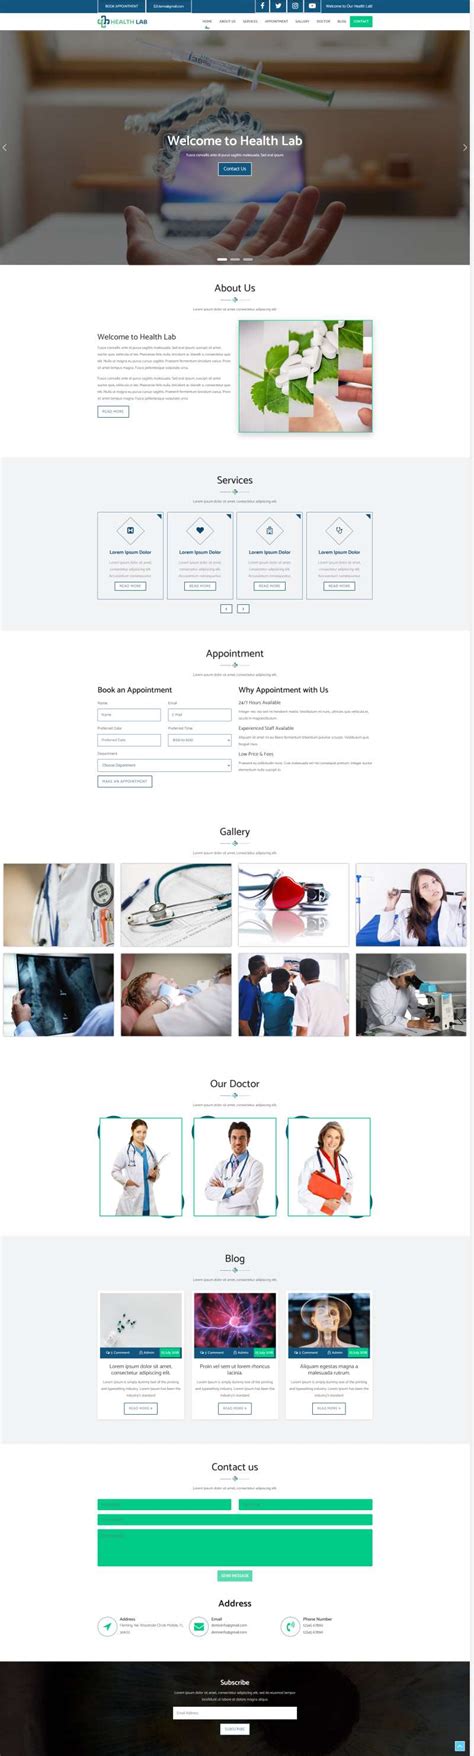 医疗保健网站设计-知识在线-马蓝科技